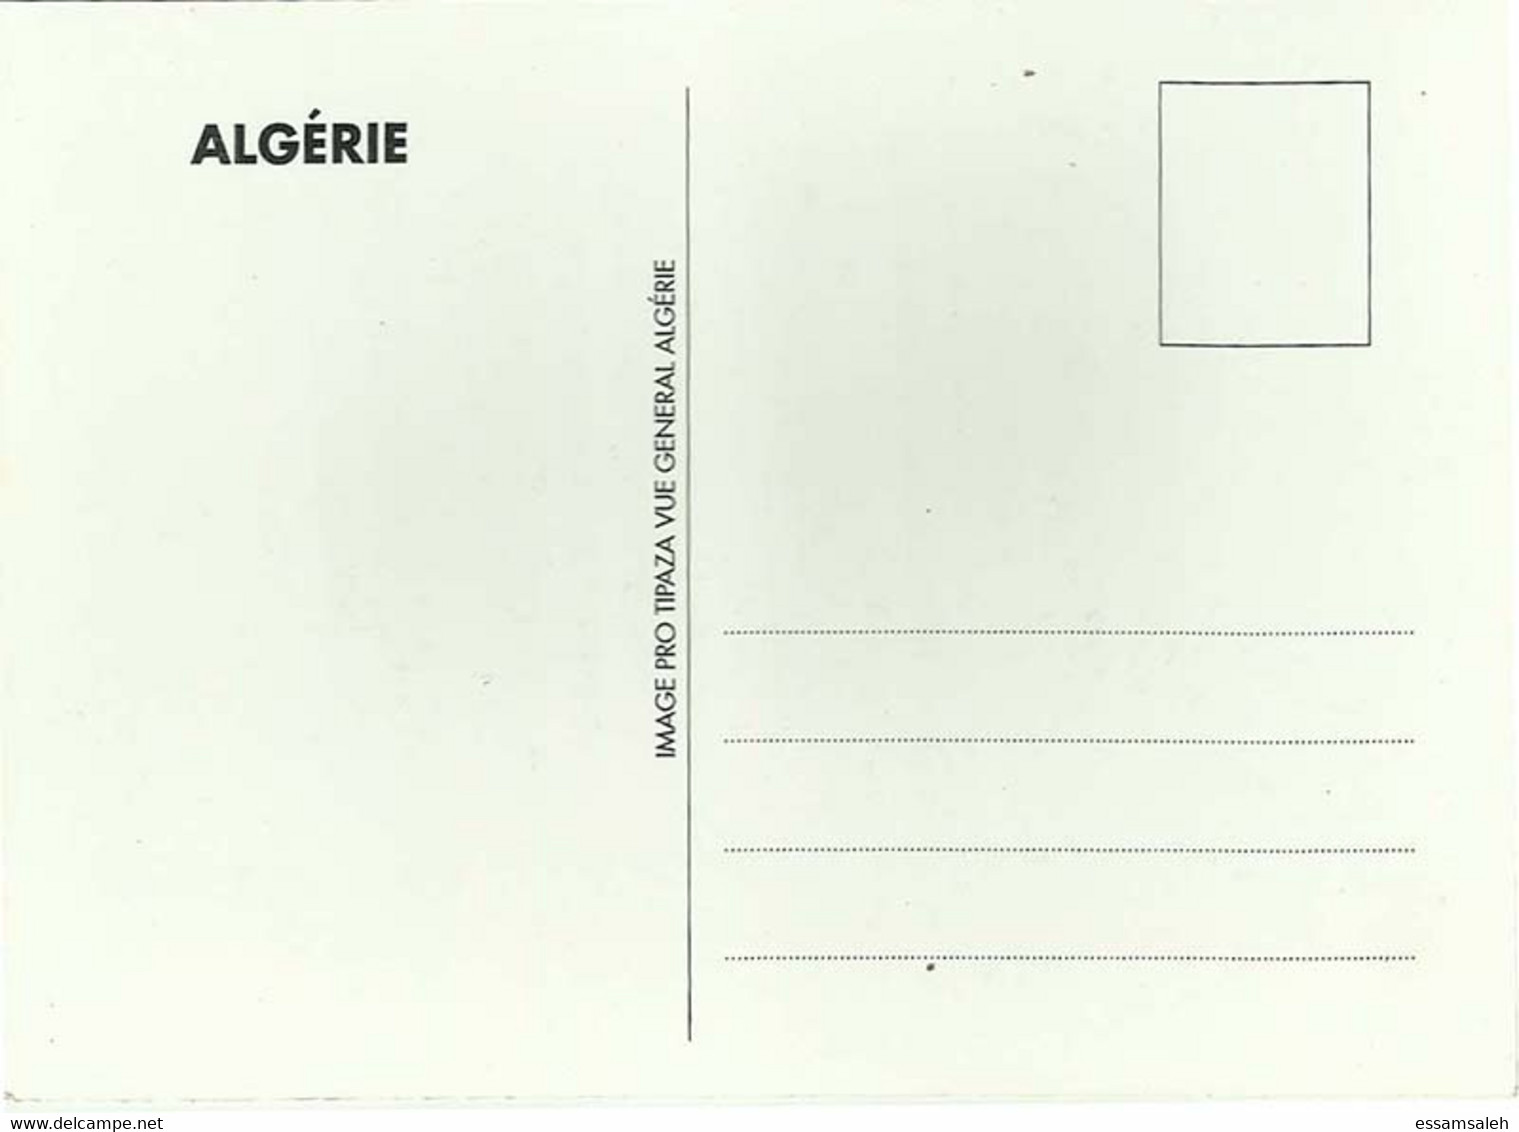 DZP10501 Algérie Algerie Algeria Tipaza / CPM Postcard - Tebessa